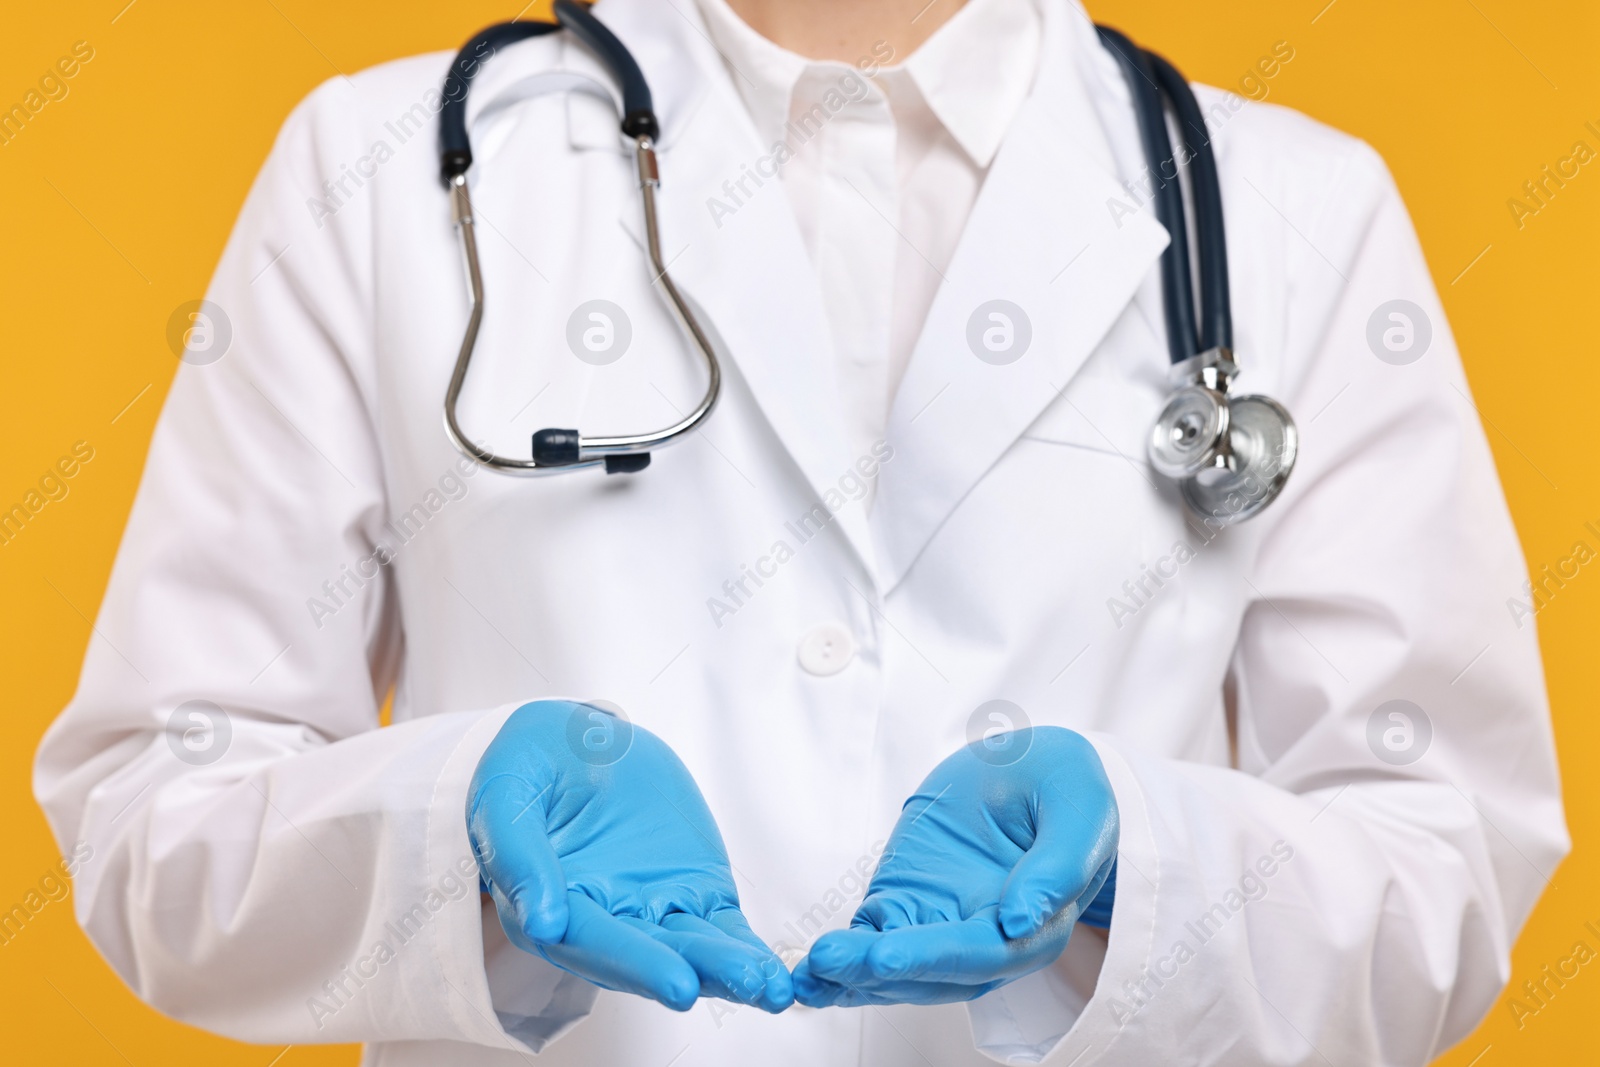 Photo of Doctor with stethoscope holding something on orange background, closeup